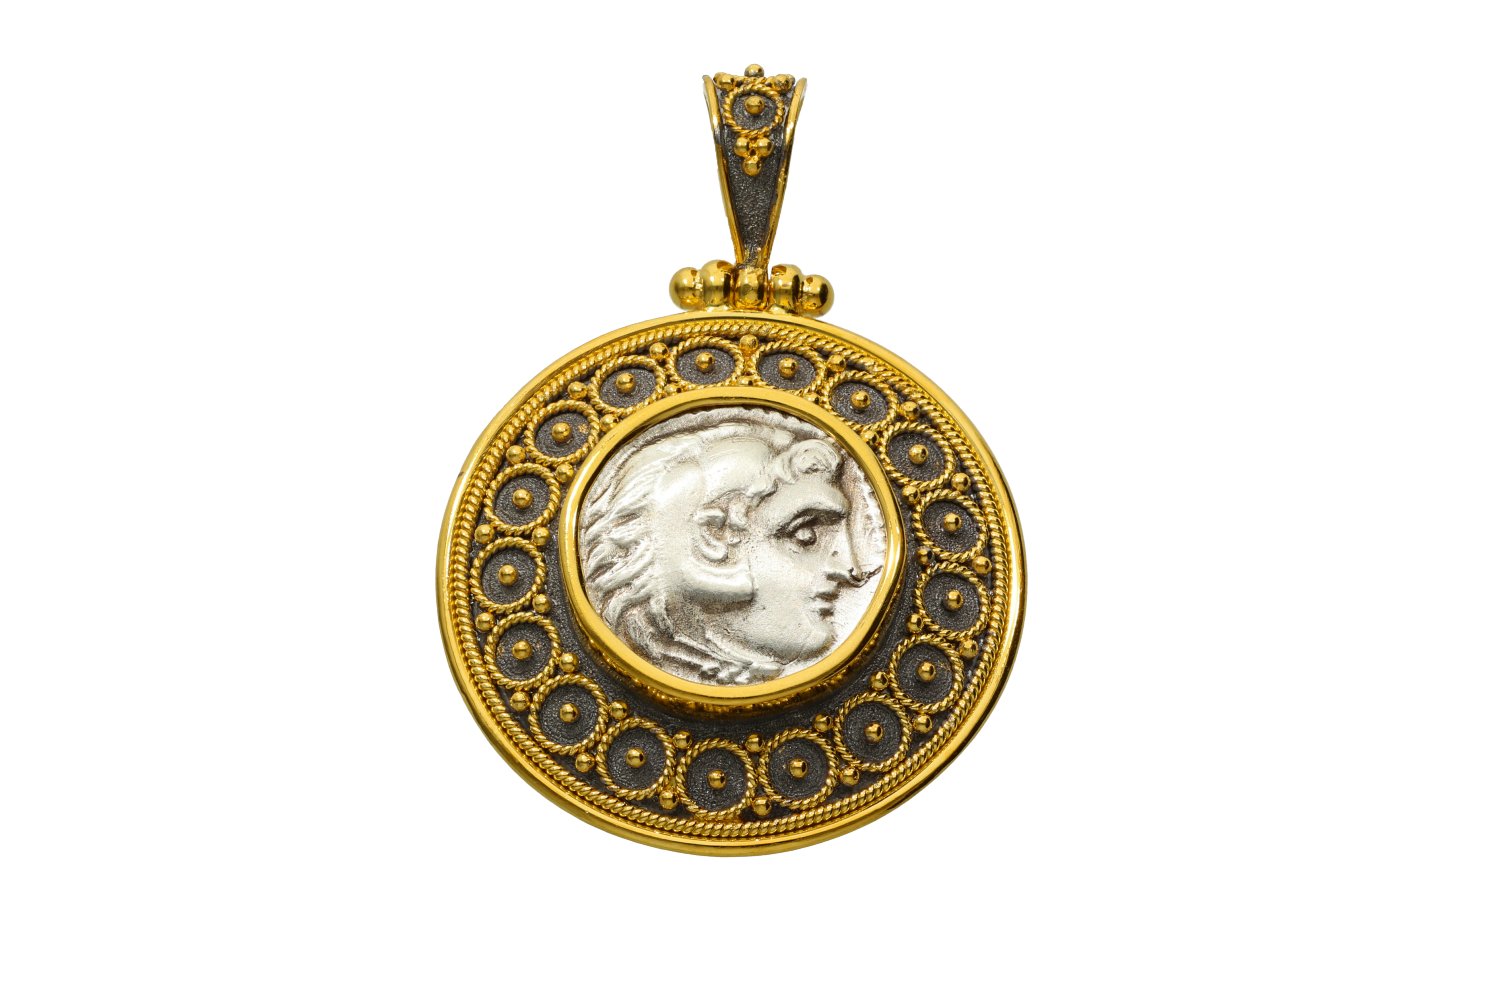 Μενταγιόν σε ασήμι & χρυσό 18Κ με ασημένιο νόμισμα εποχής Αλεξάνδρου (κεφαλή Ηρακλή-3,9γρ) δεμένο σε στρογγυλό μενταγιόν με κυκλικά συρματερά σχέδια